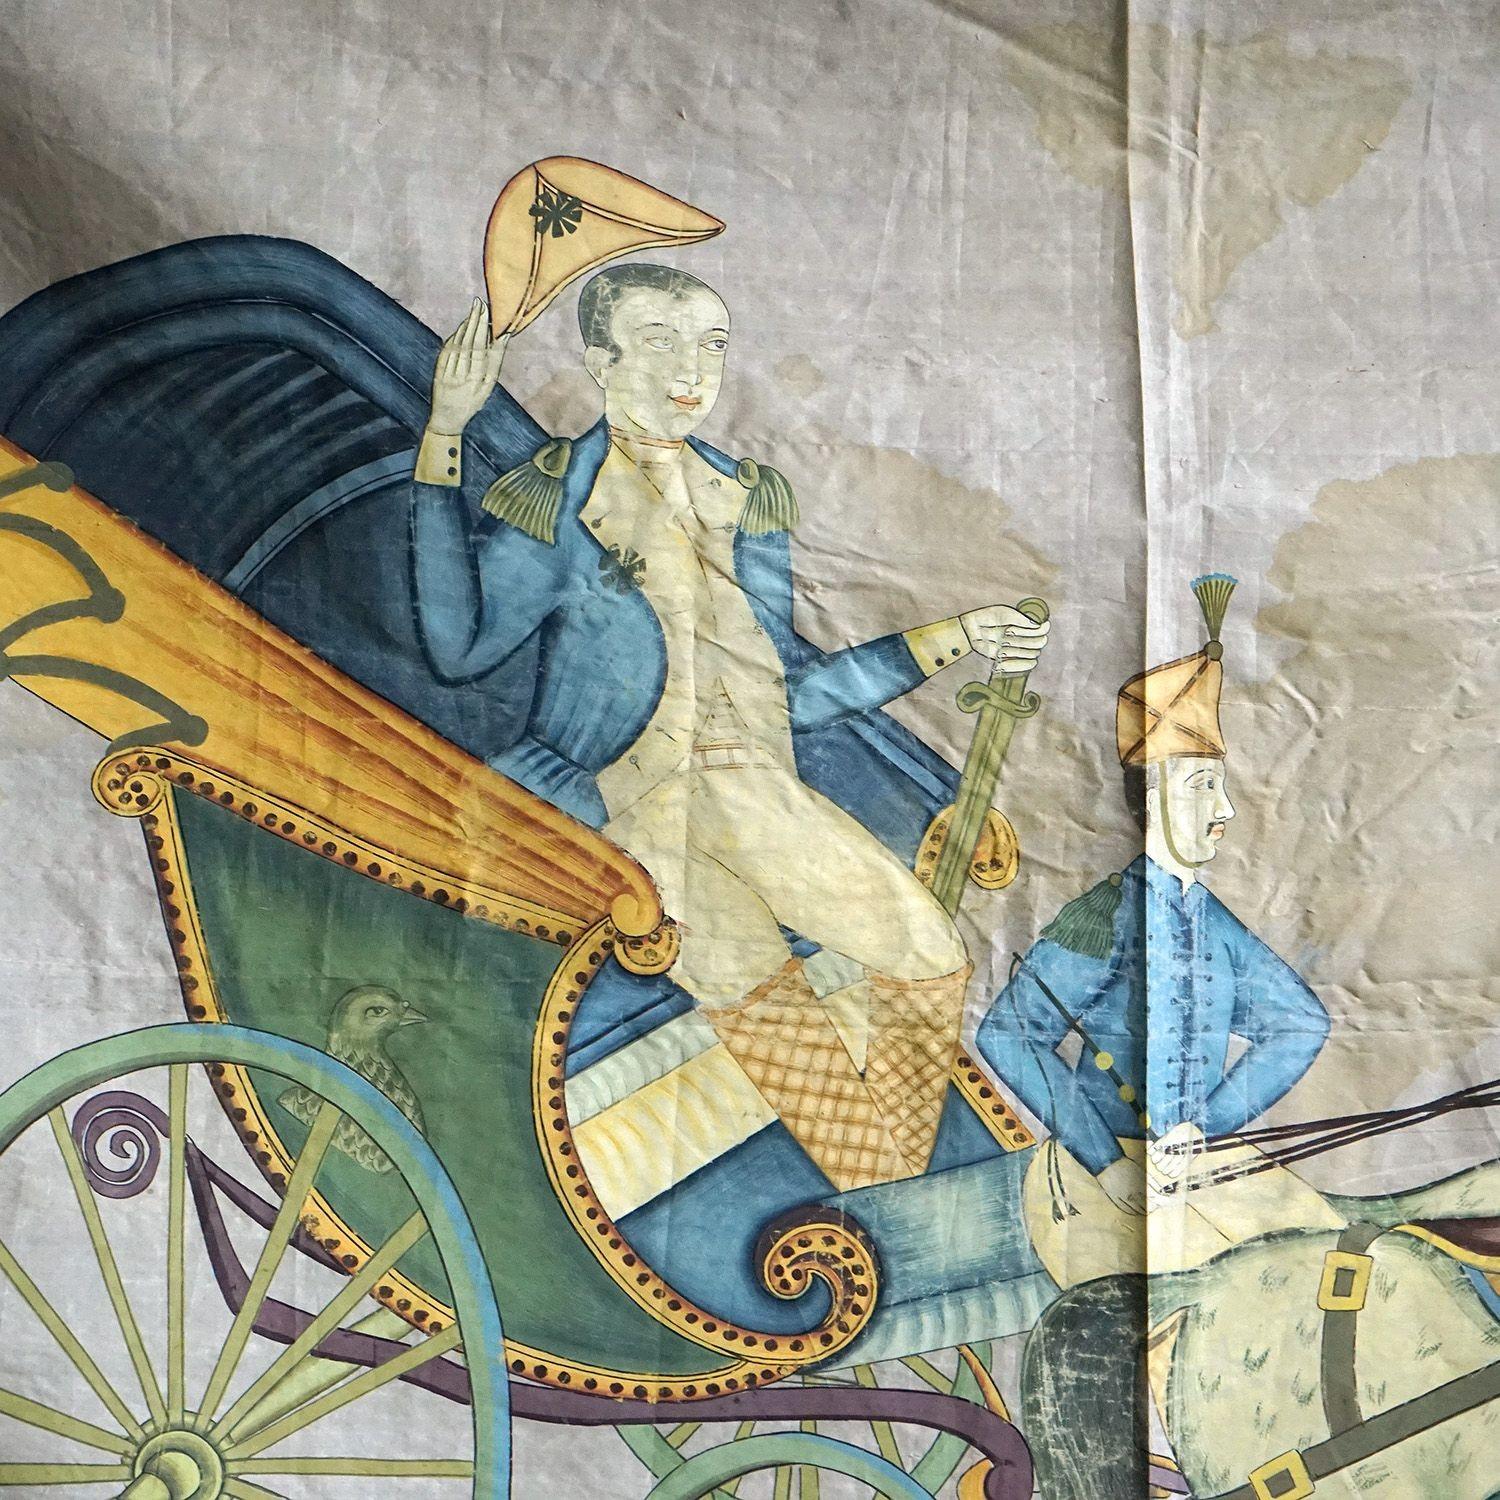 Peinture ancienne représentant un chariot militaire

Représentation d'un chef militaire occidental coiffé d'un chapeau bicorne, peut-être un général, ou peut-être même Napoléon, passant dans une calèche avec deux chevaux blancs et un soldat marchant